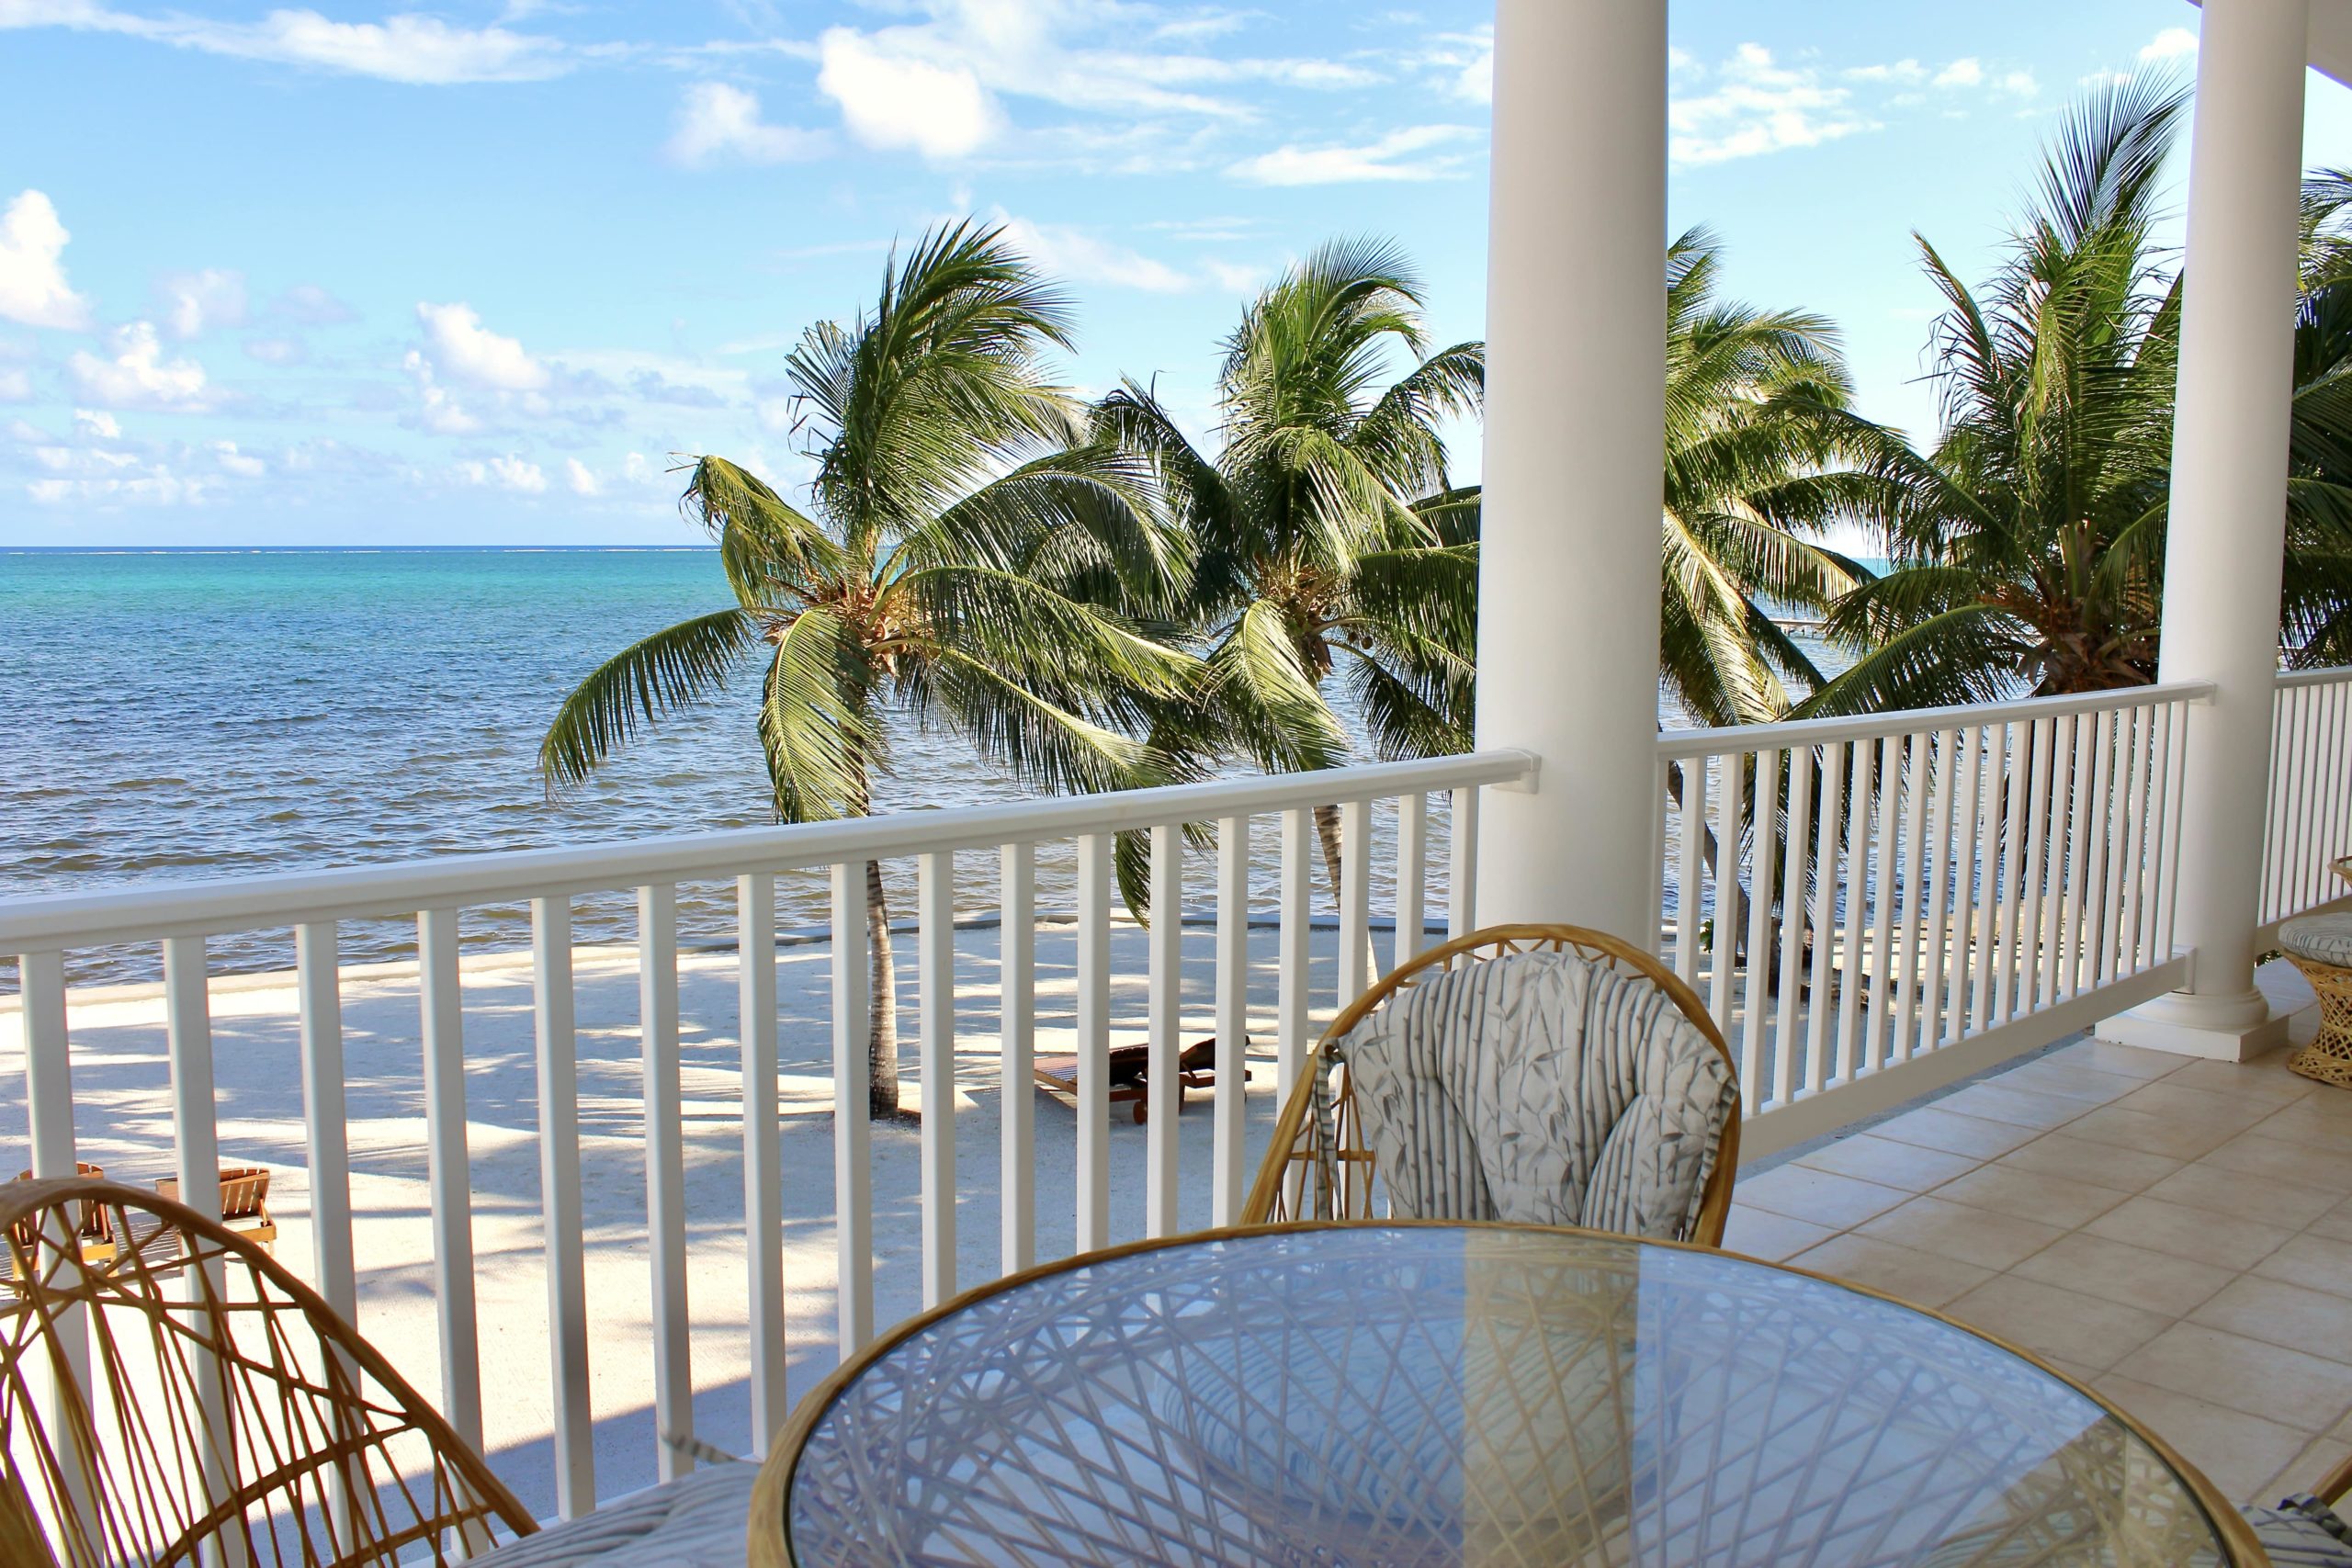 Beachfront hotel with balcony overlooking the ocean in Belize